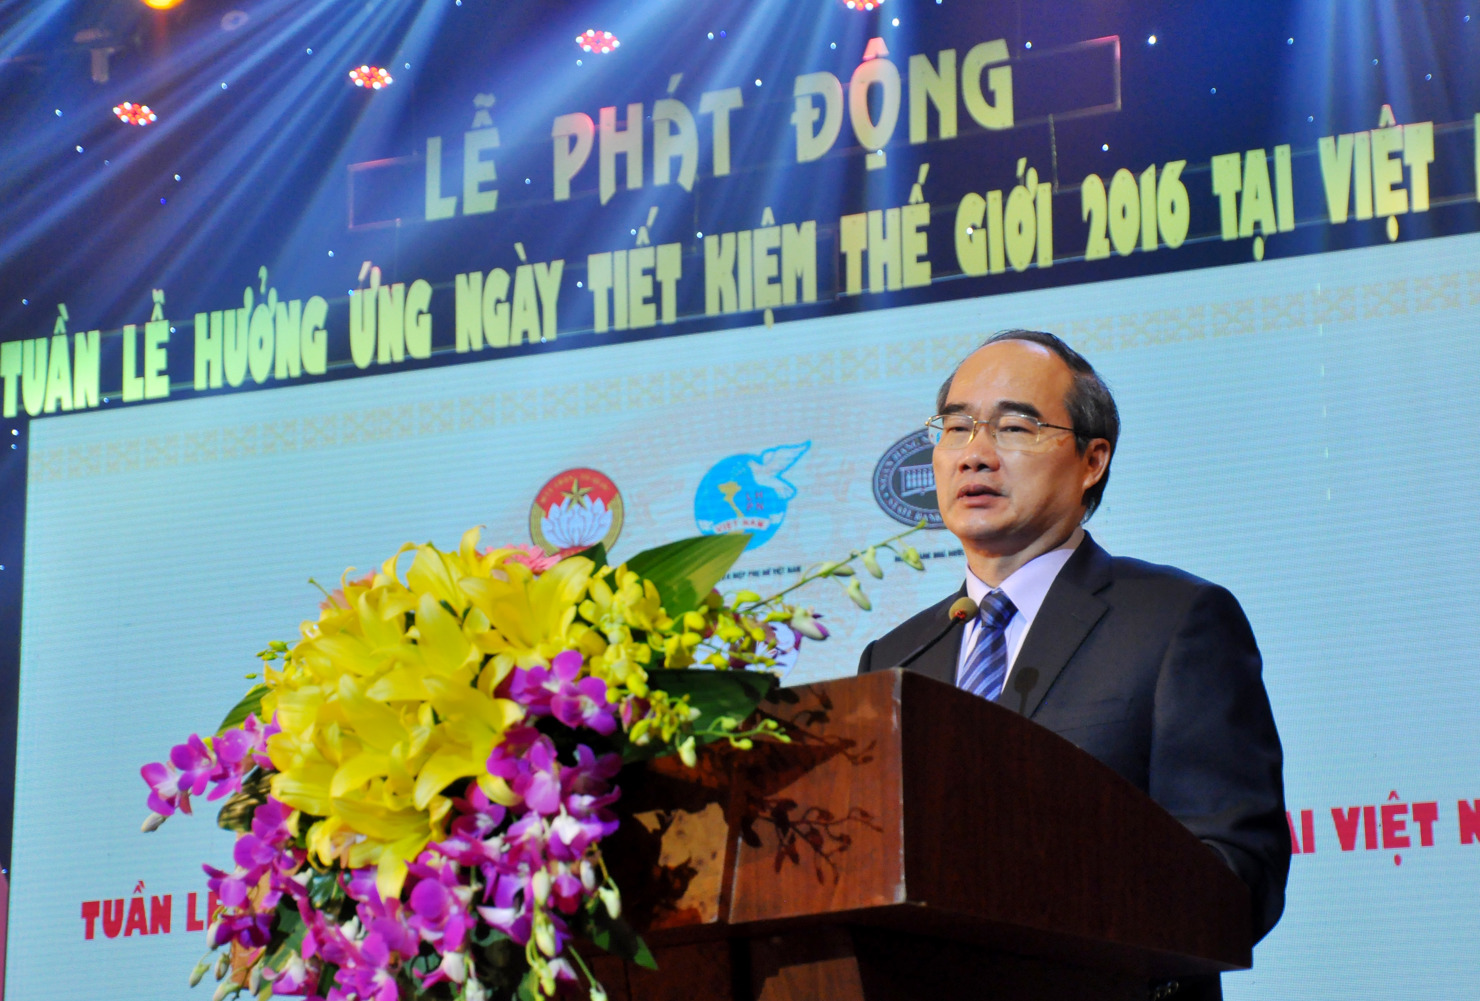 ông Nguyễn Thiện Nhân - Ủy viên Bộ Chính trị, Chủ tịch Ủy ban Trung ương Mặt trận Tổ quốc Việt Nam phát biểu tại buổi Lễ phát động.